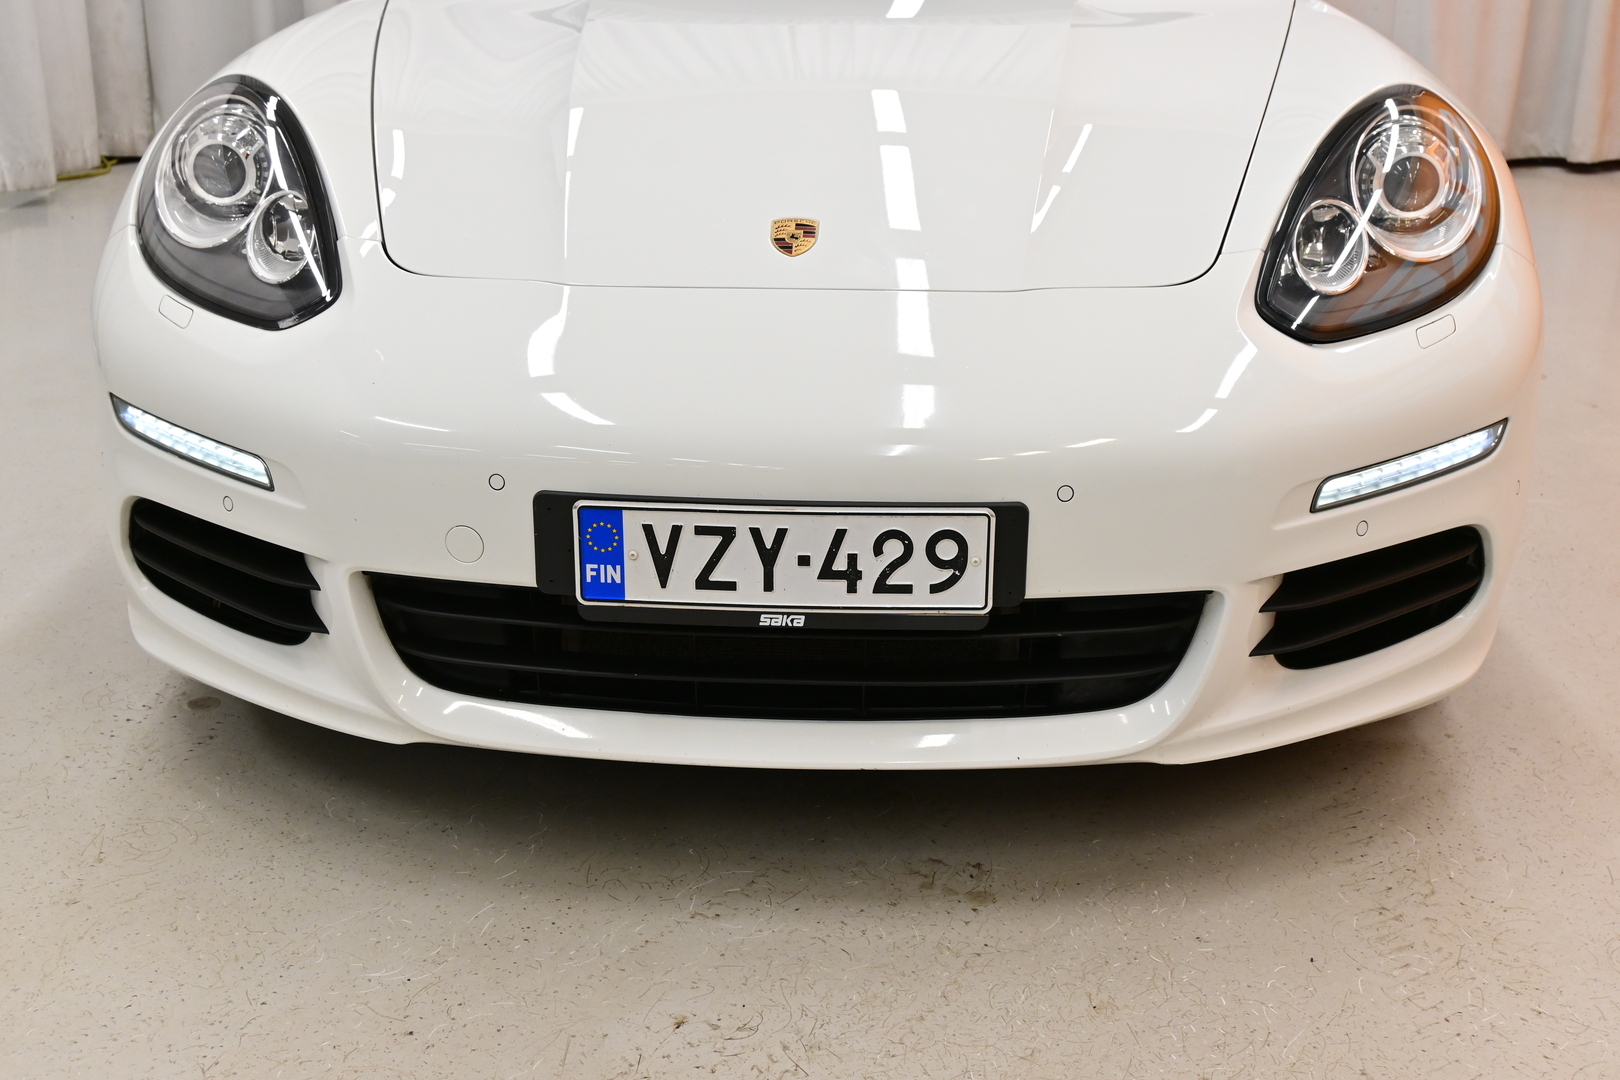 Valkoinen Viistoperä, Porsche Panamera – VZY-429